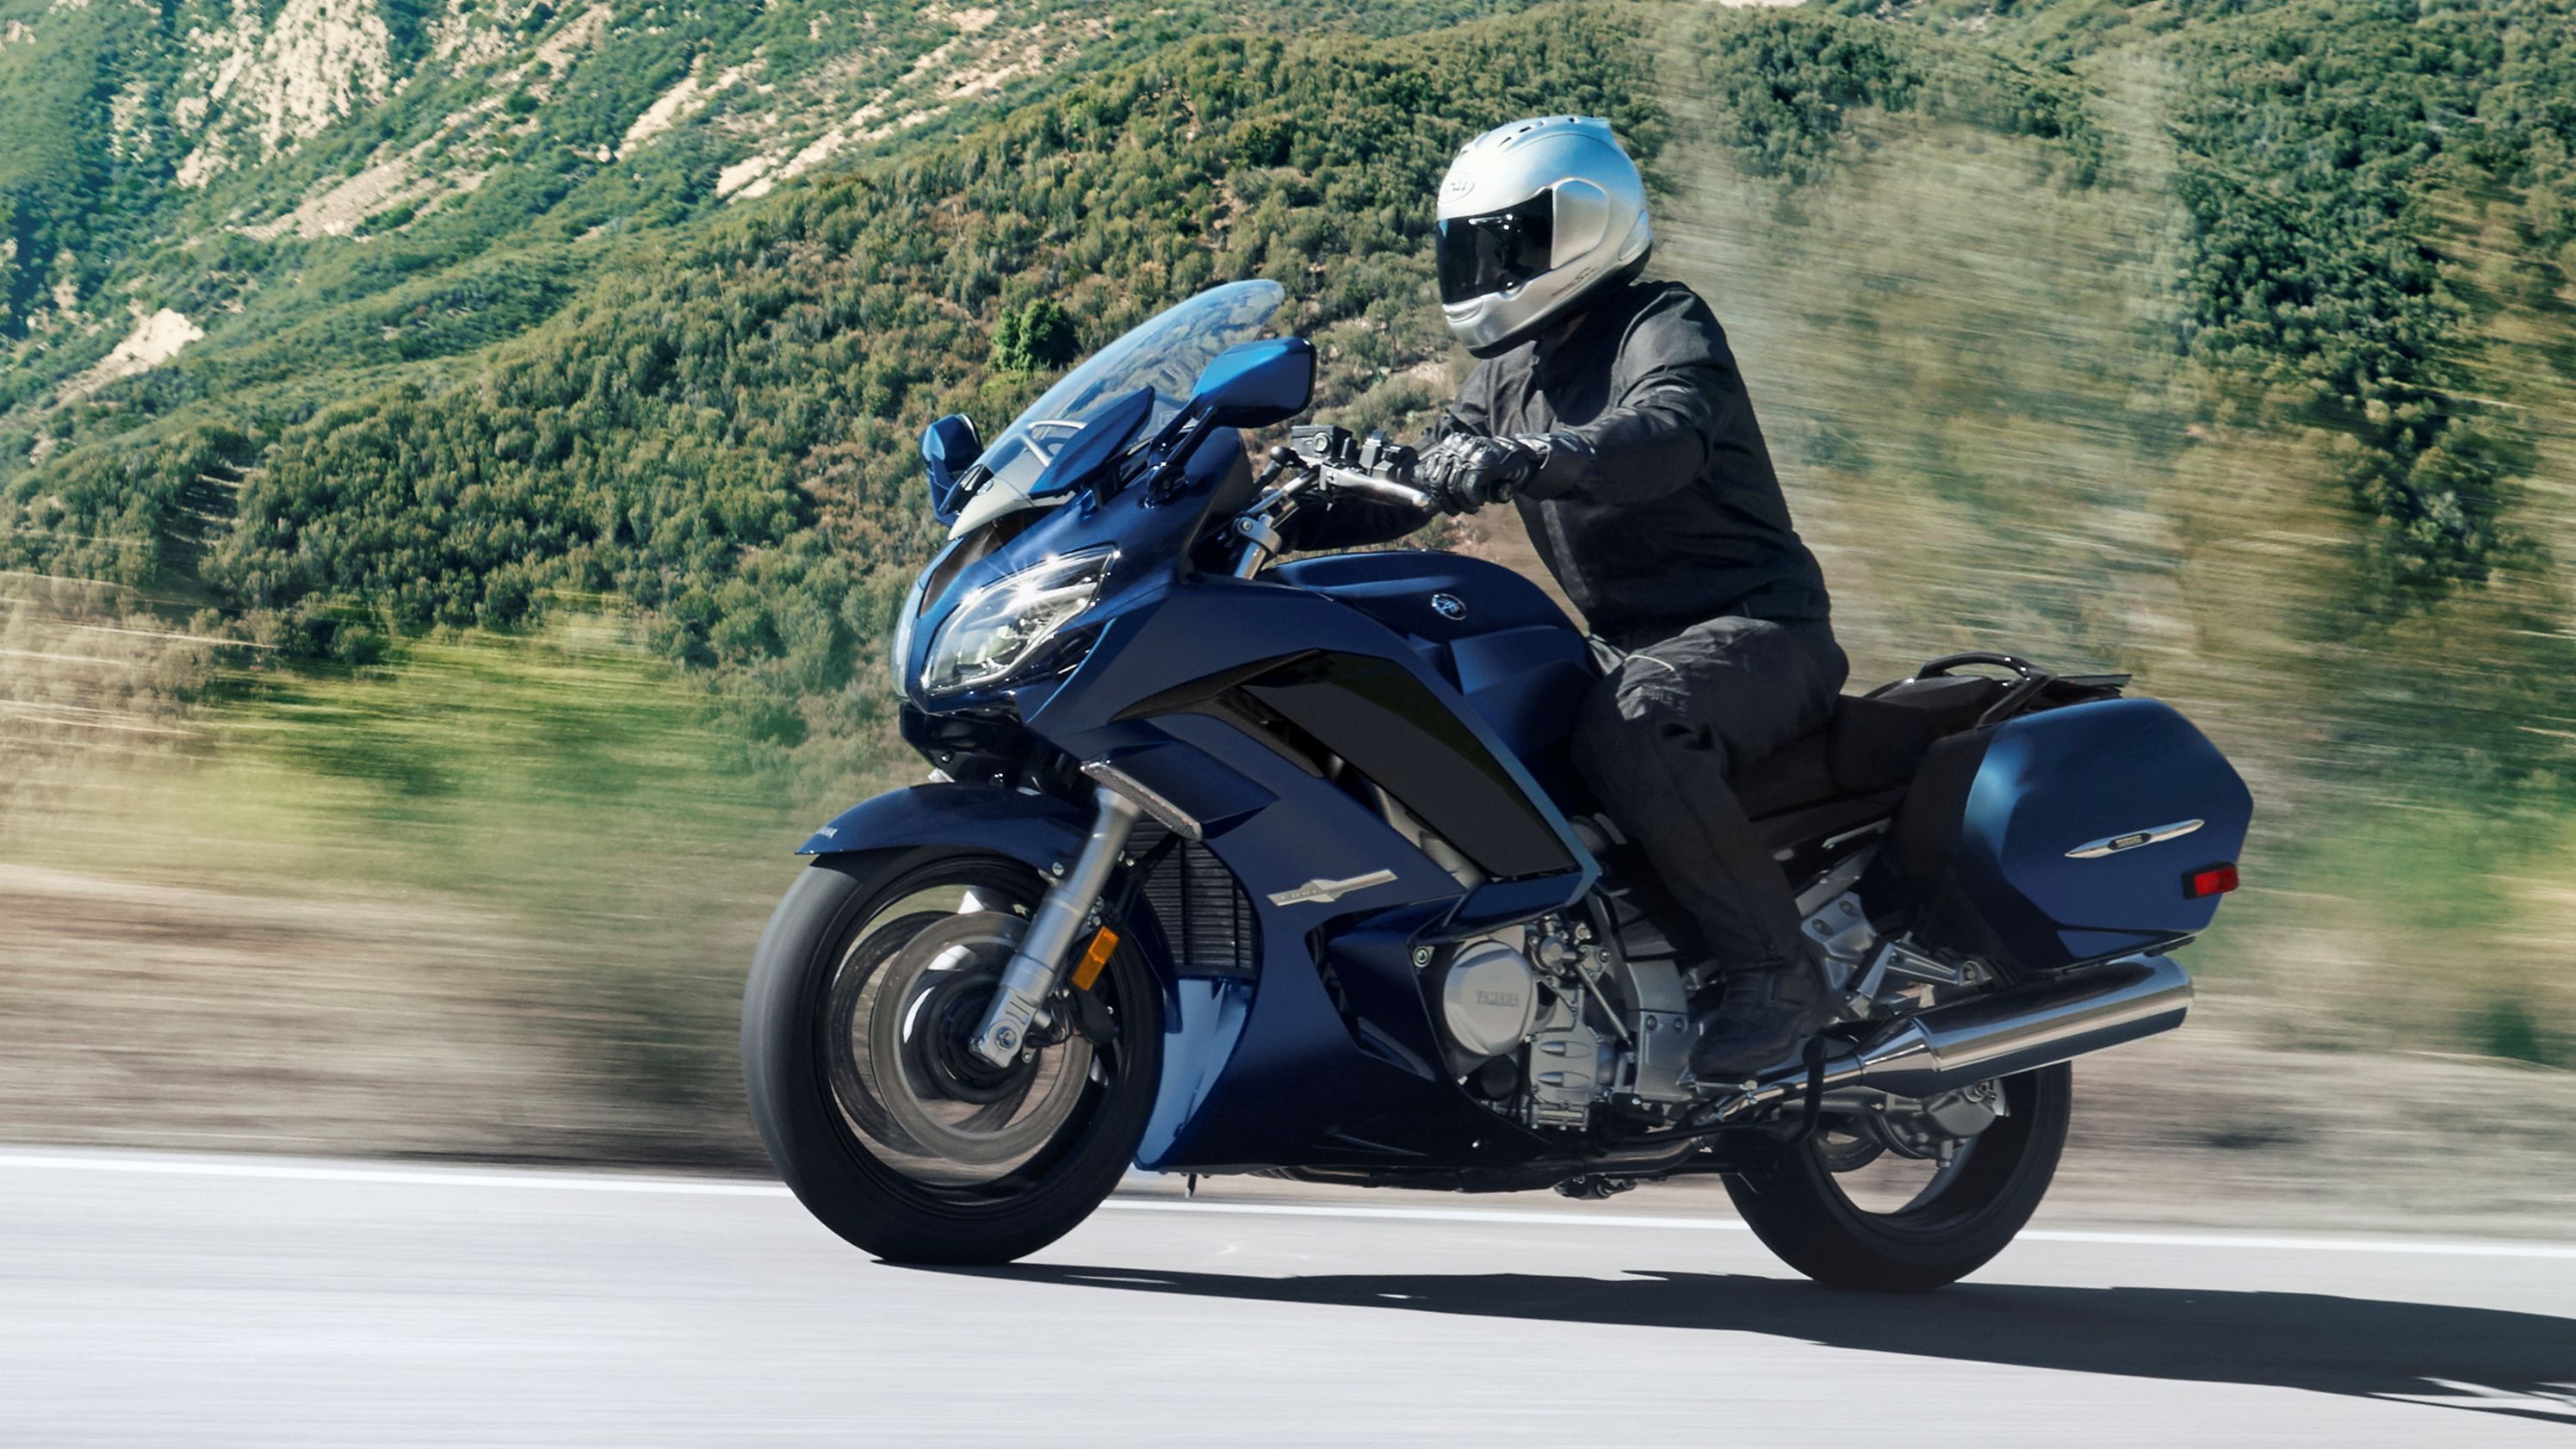 2022 Yamaha FJR1300 Performance, Price, and Photos